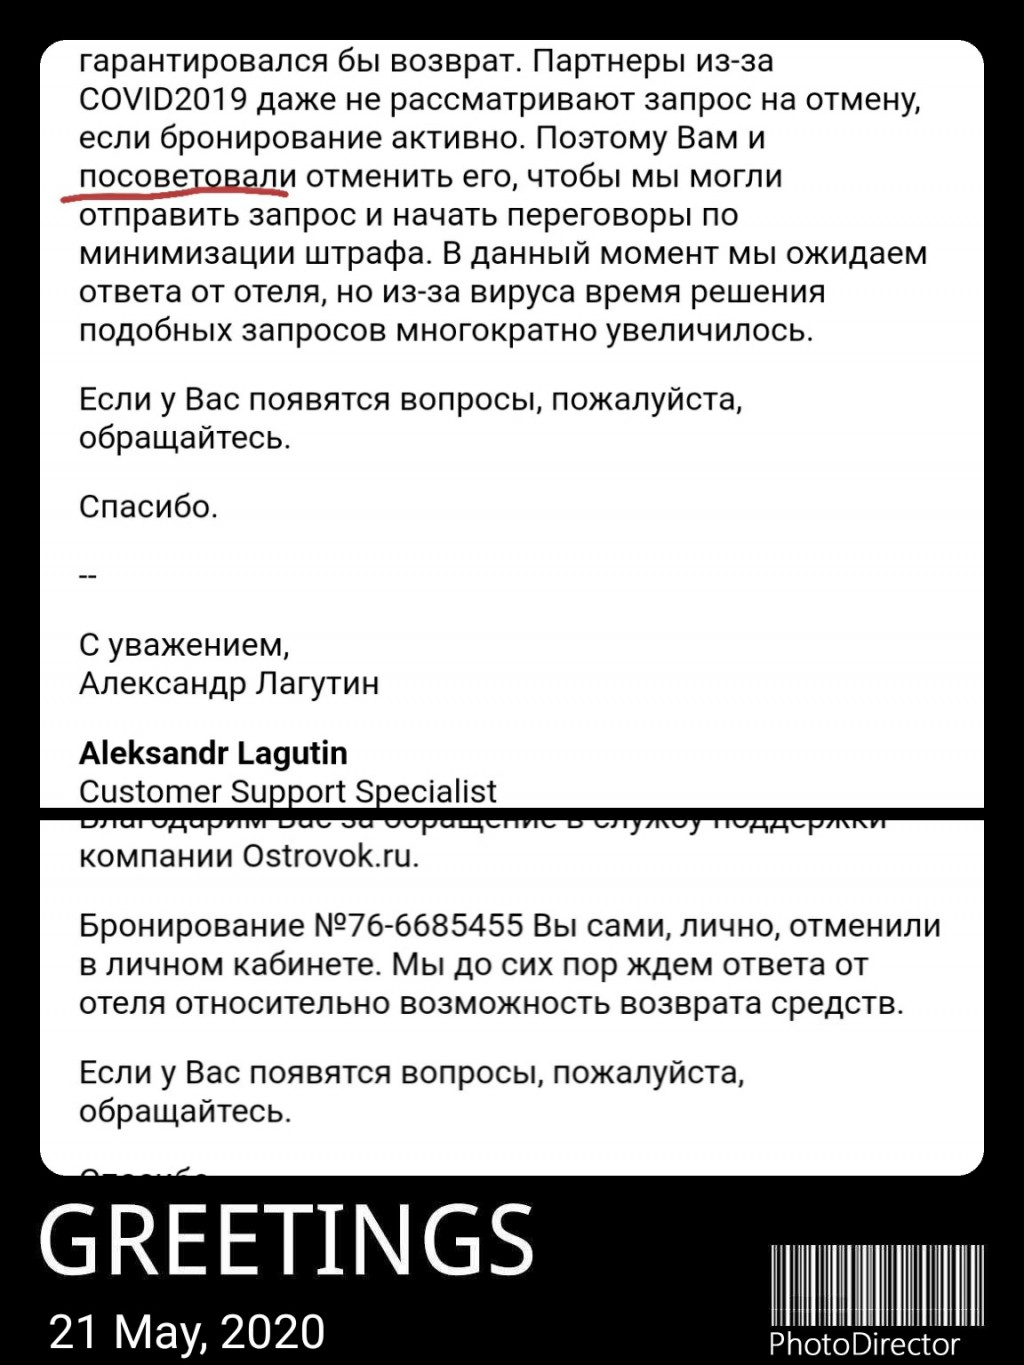 Ostrovok.ru - Деньги по раннему бронированию вернули только по возвратному тарифу